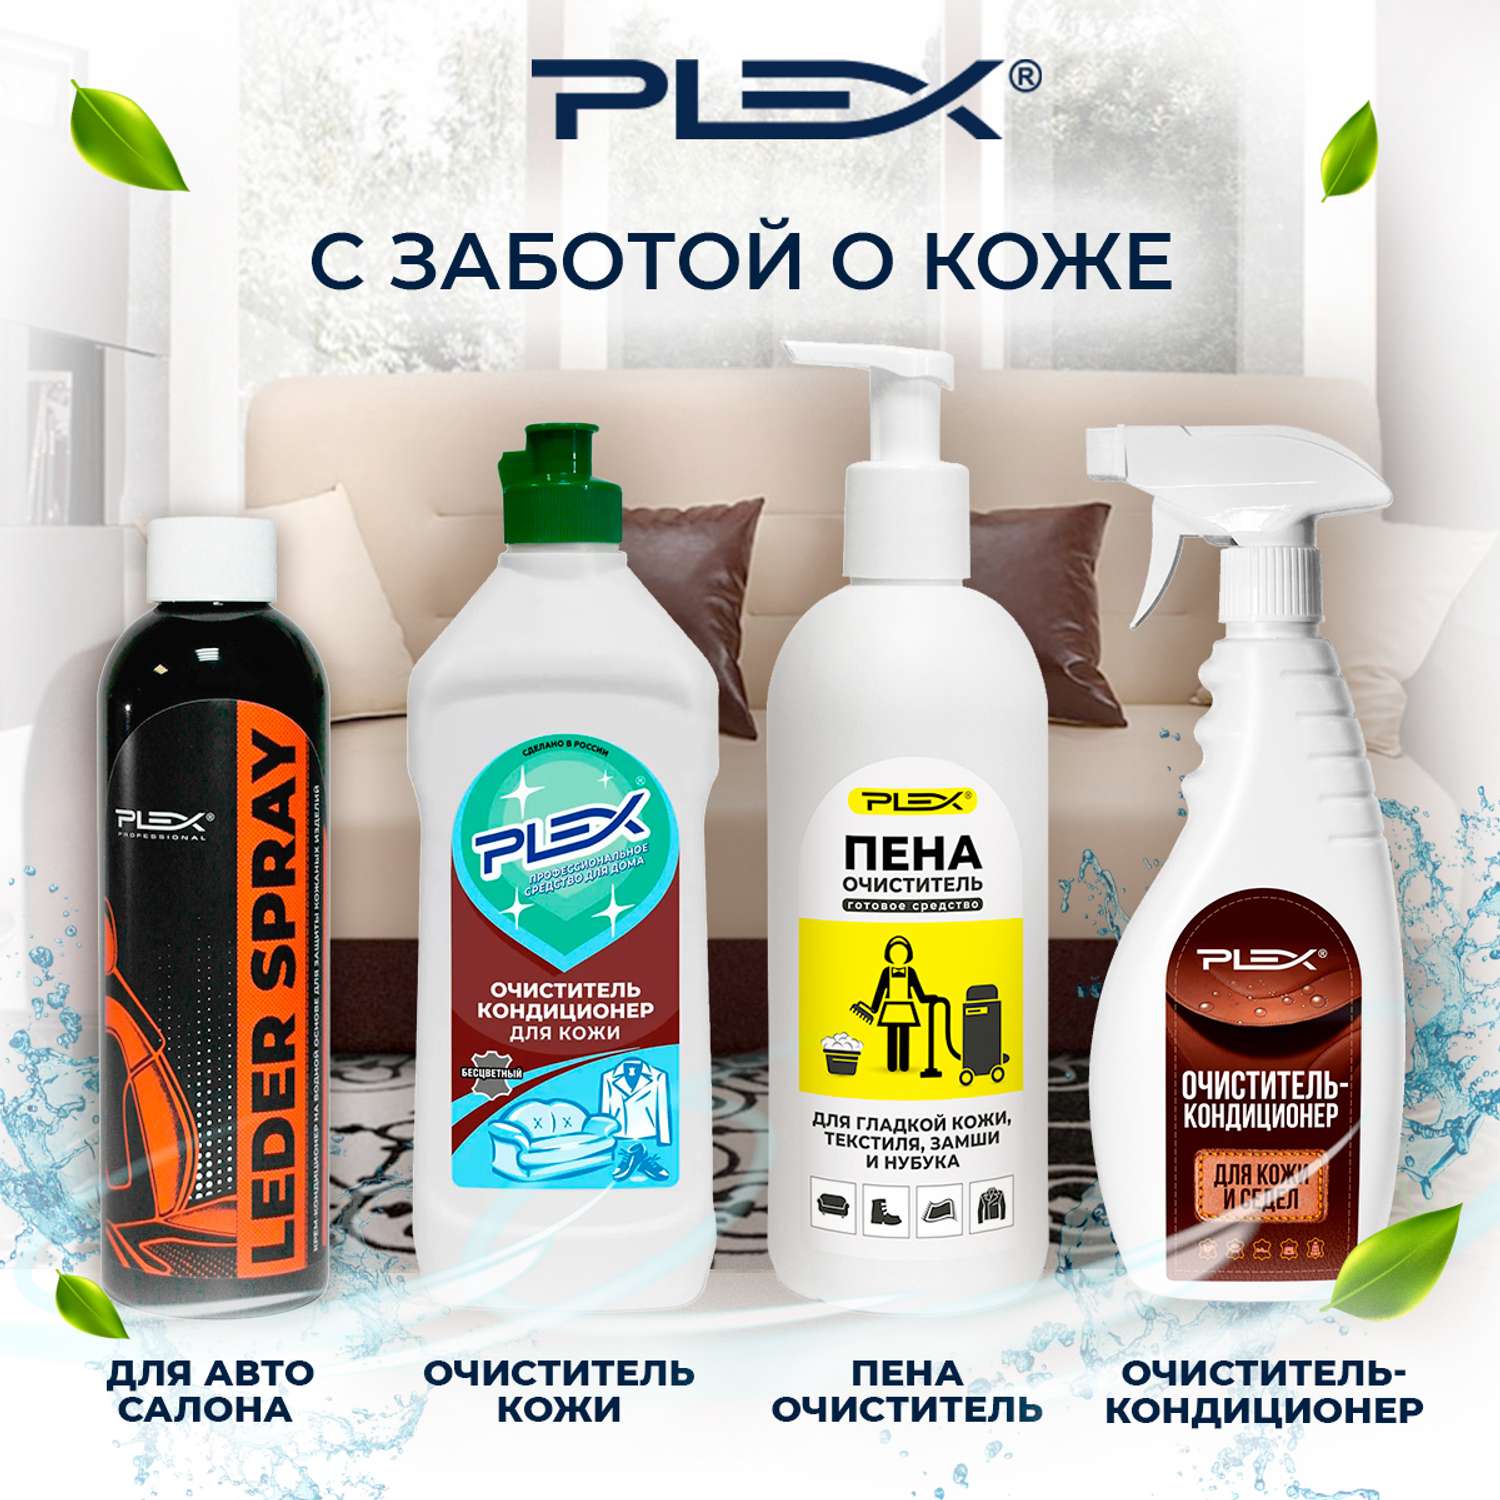 Очиститель-кондиционер Plex для кожи седел и амуниции 500 мл - фото 5